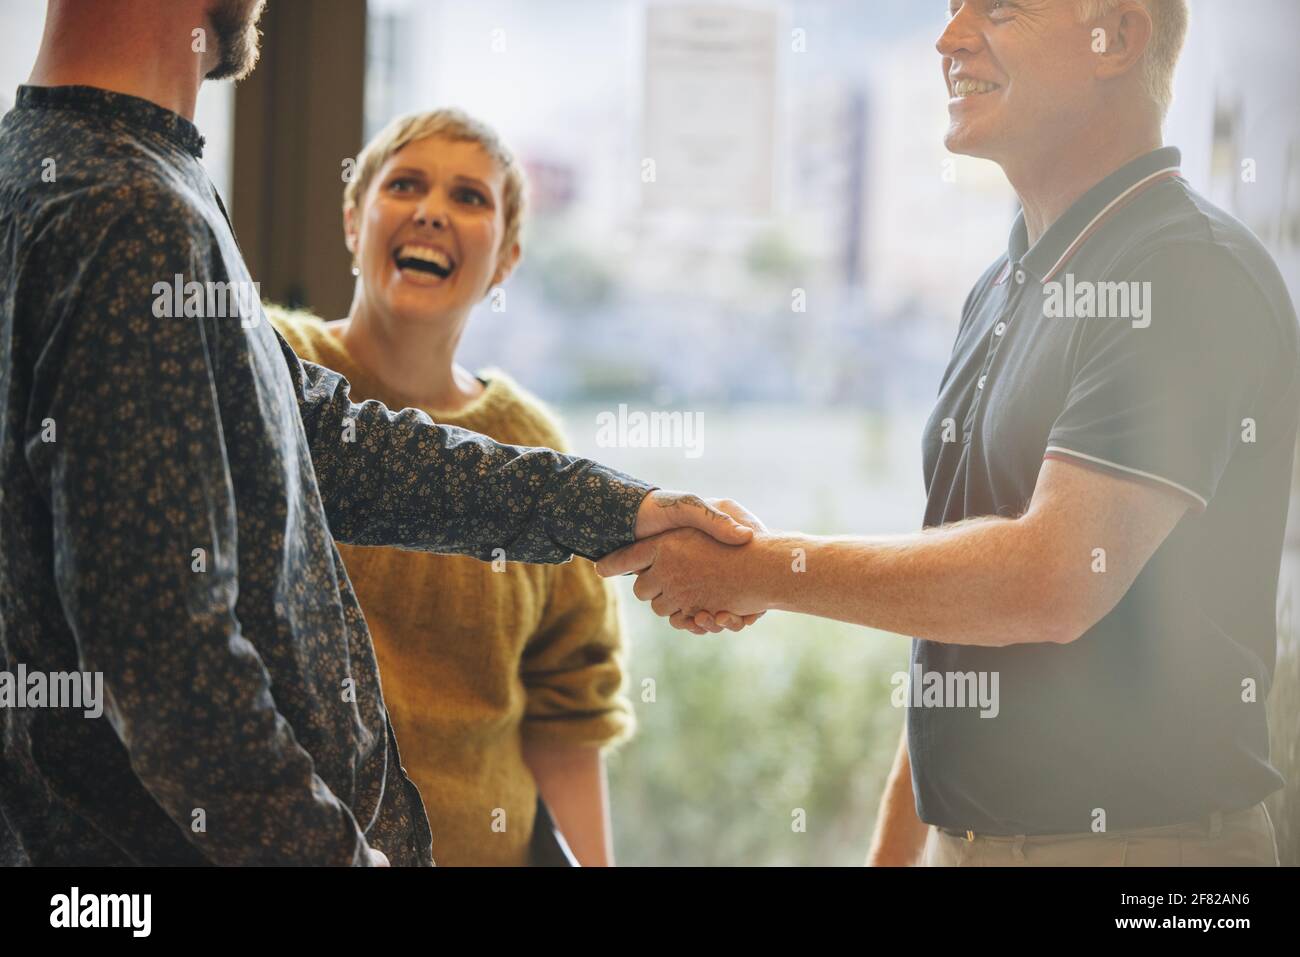 Zwei Geschäftsmänner schütteln die Hand nach einem Deal mit lächelnder Kollegin. Geschäftsleute schütteln nach einem Deal Hand. Stockfoto